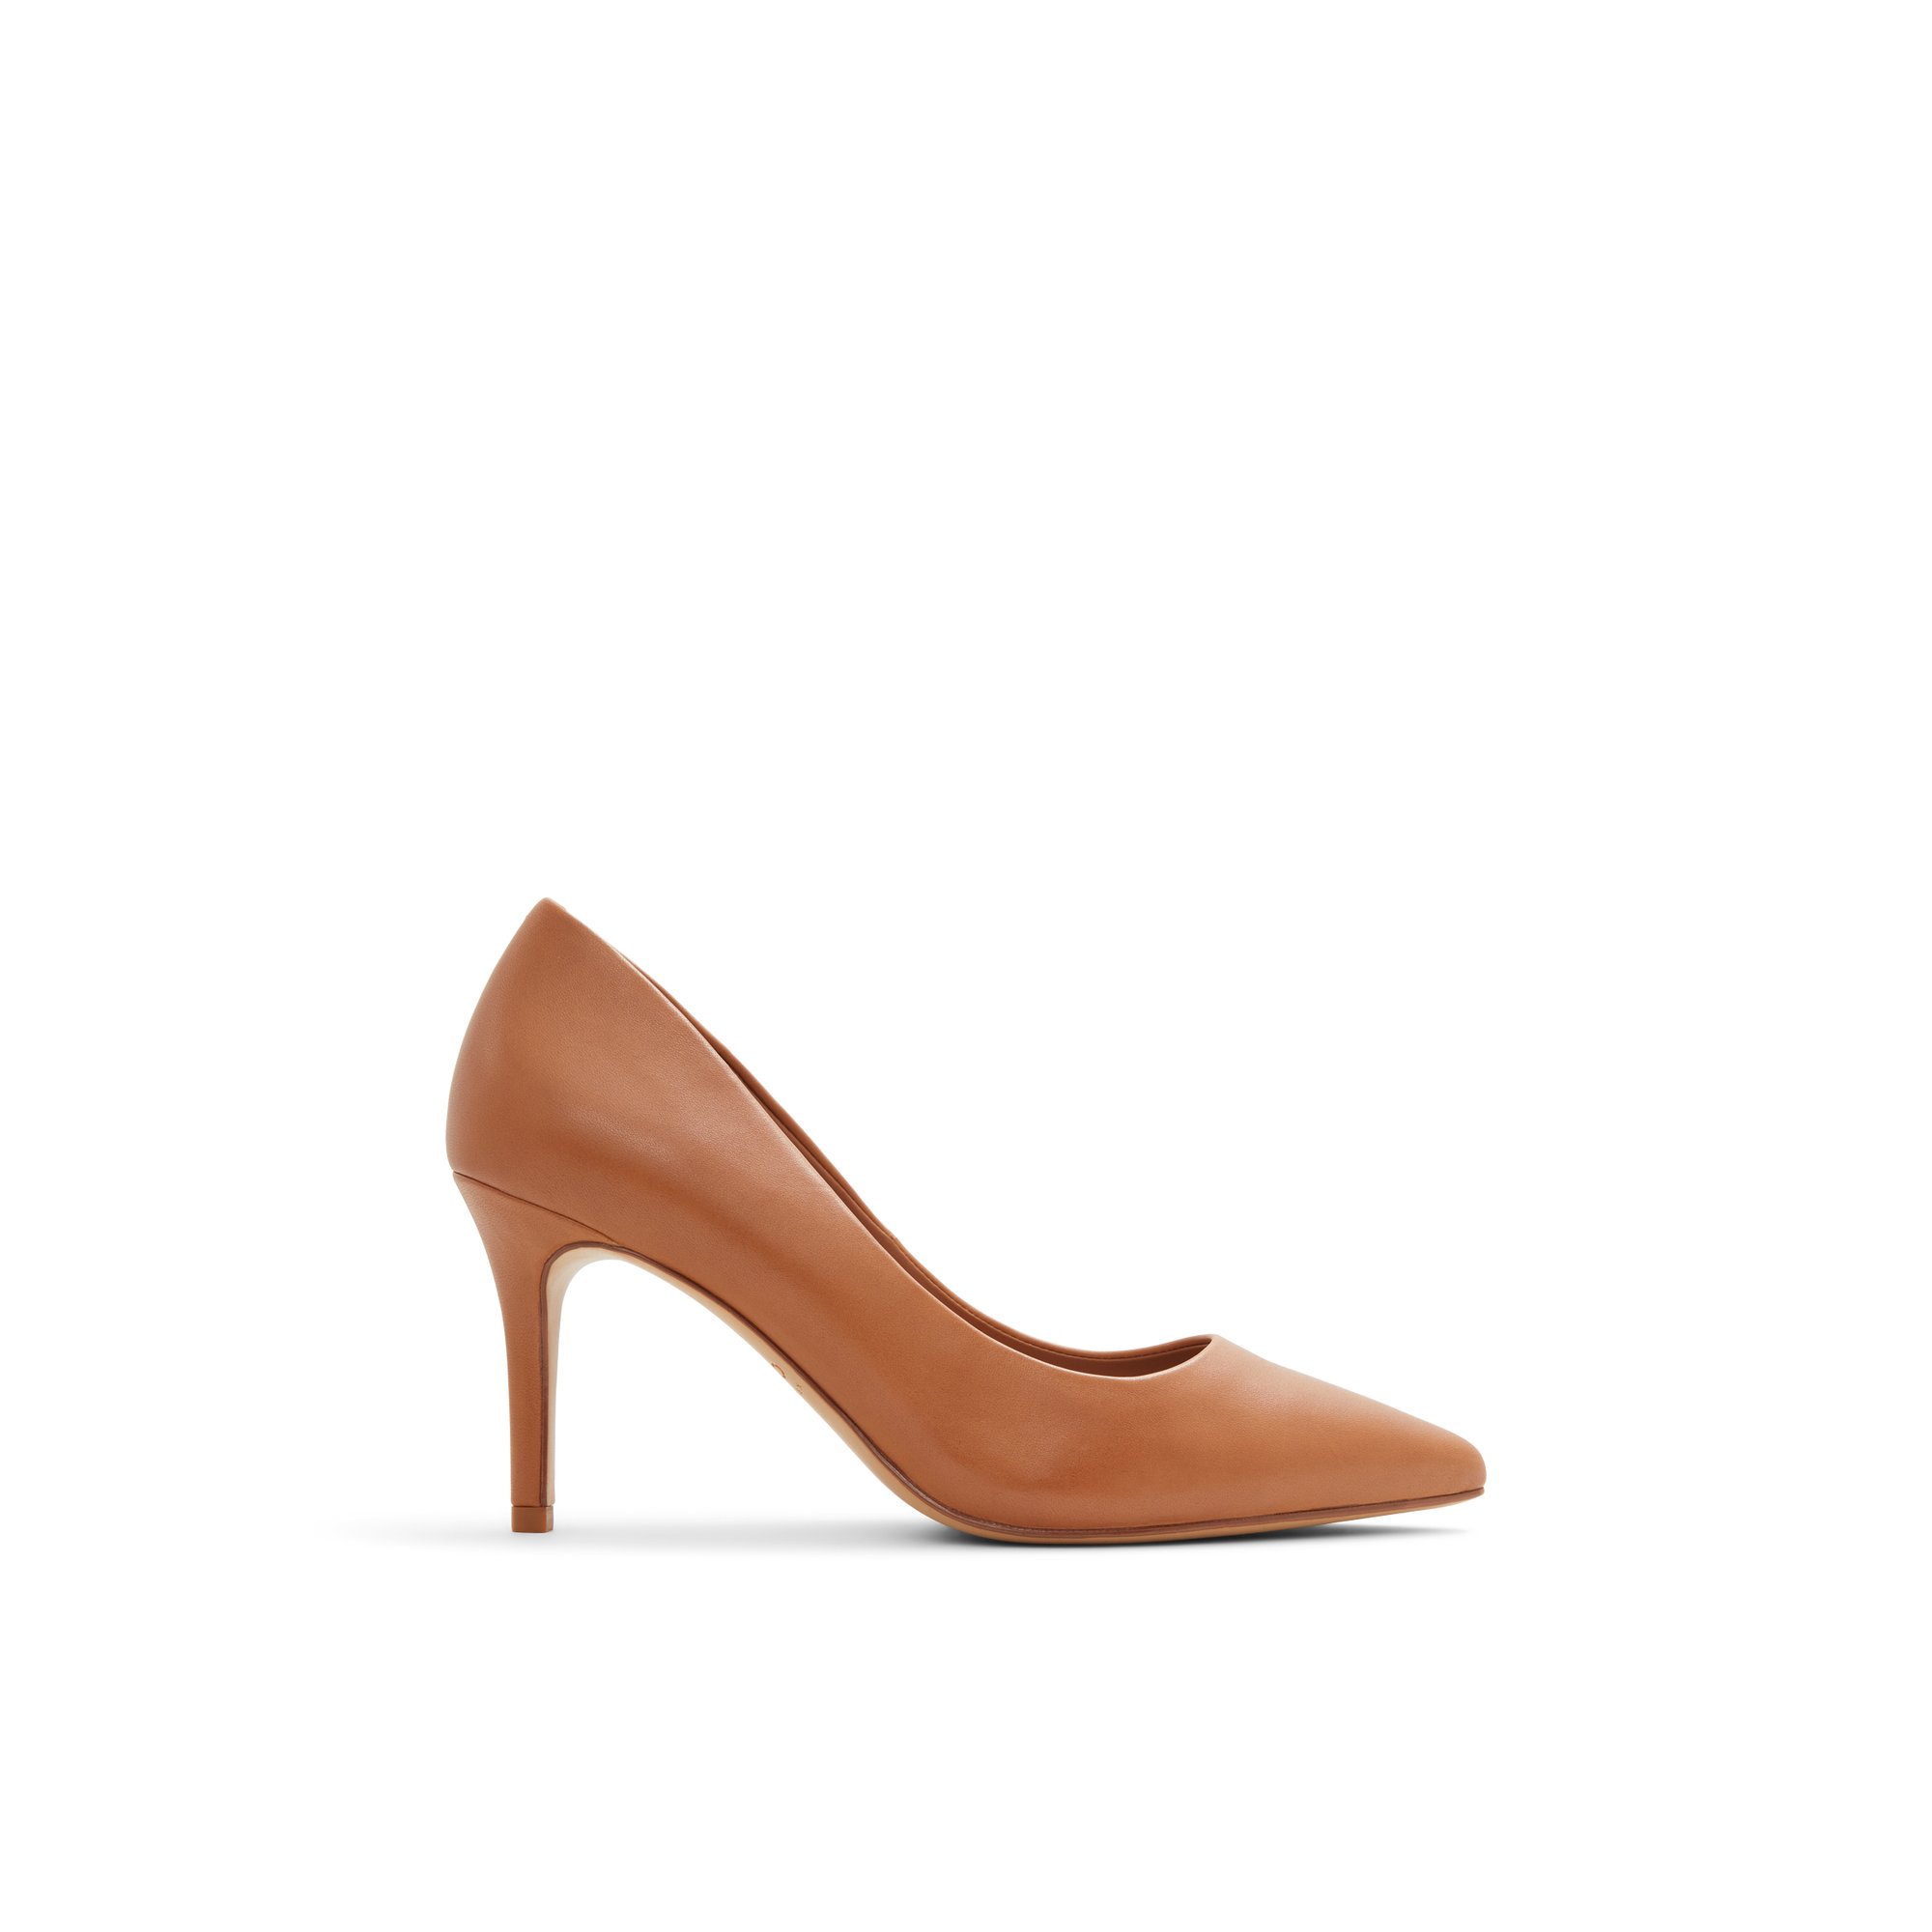 ALDO Sereniti - Women's Pump Heel - Brown